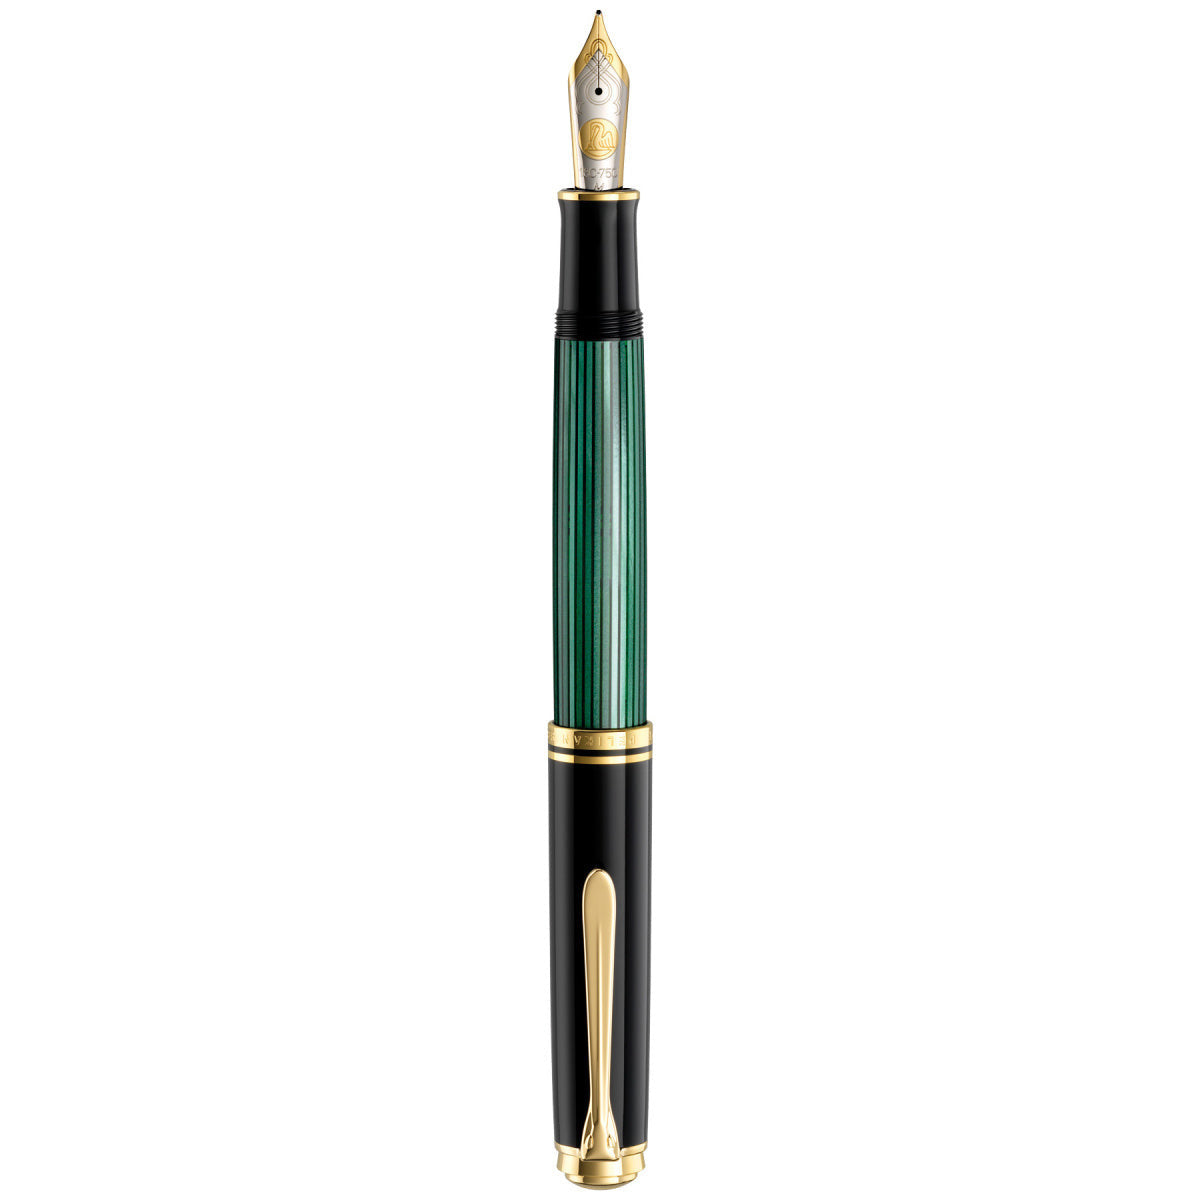 Pelikan M1000 fountain pen green-black